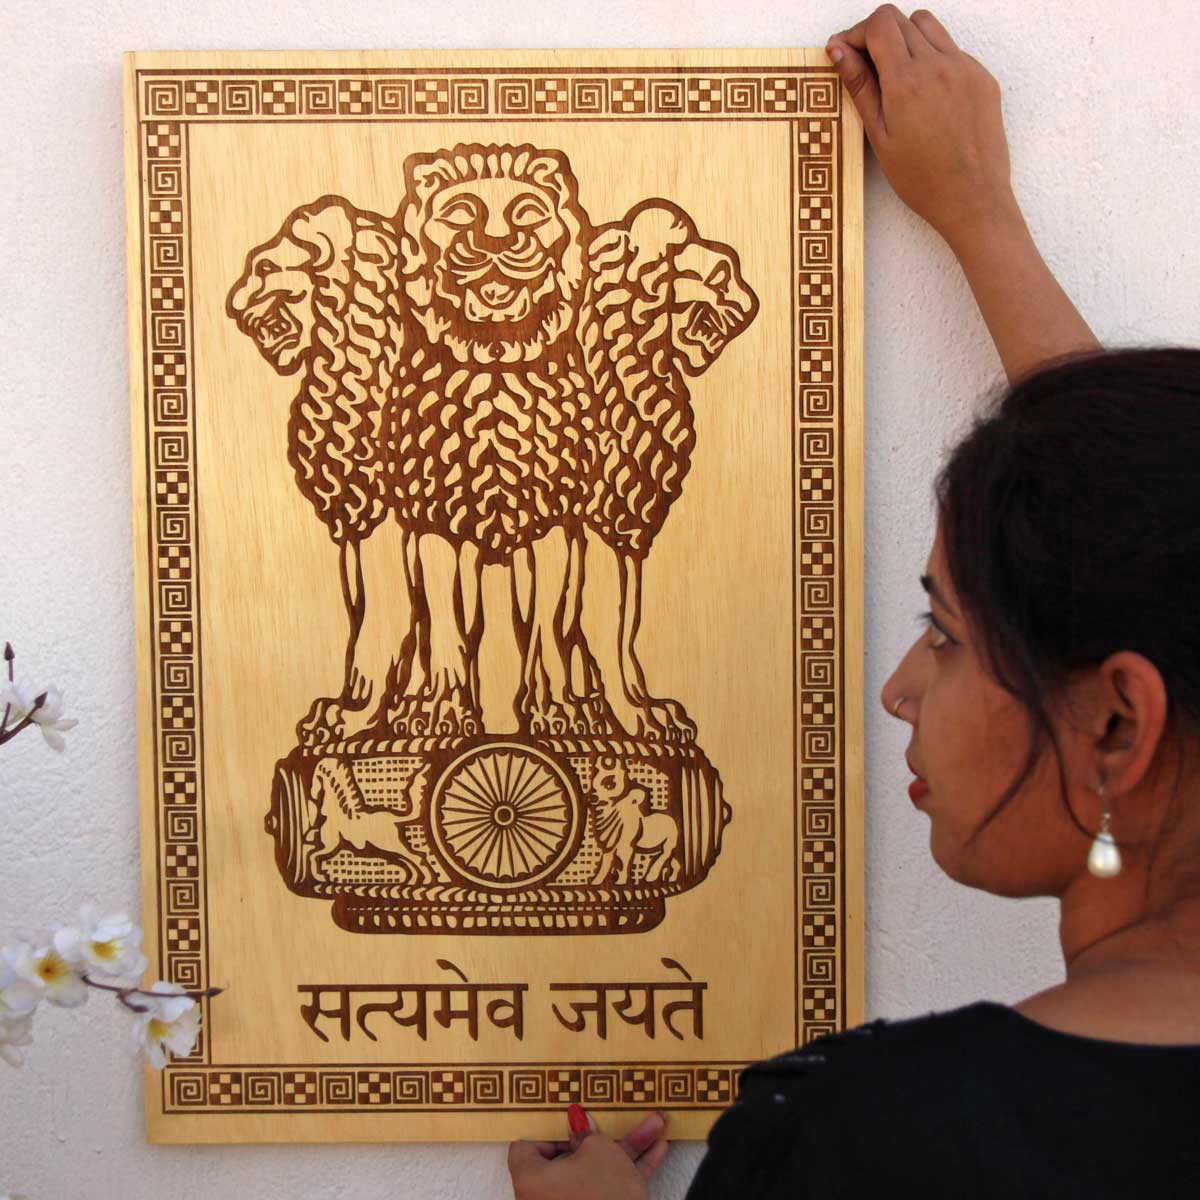 ashok stambh satyamev jayete engraved wood plaque